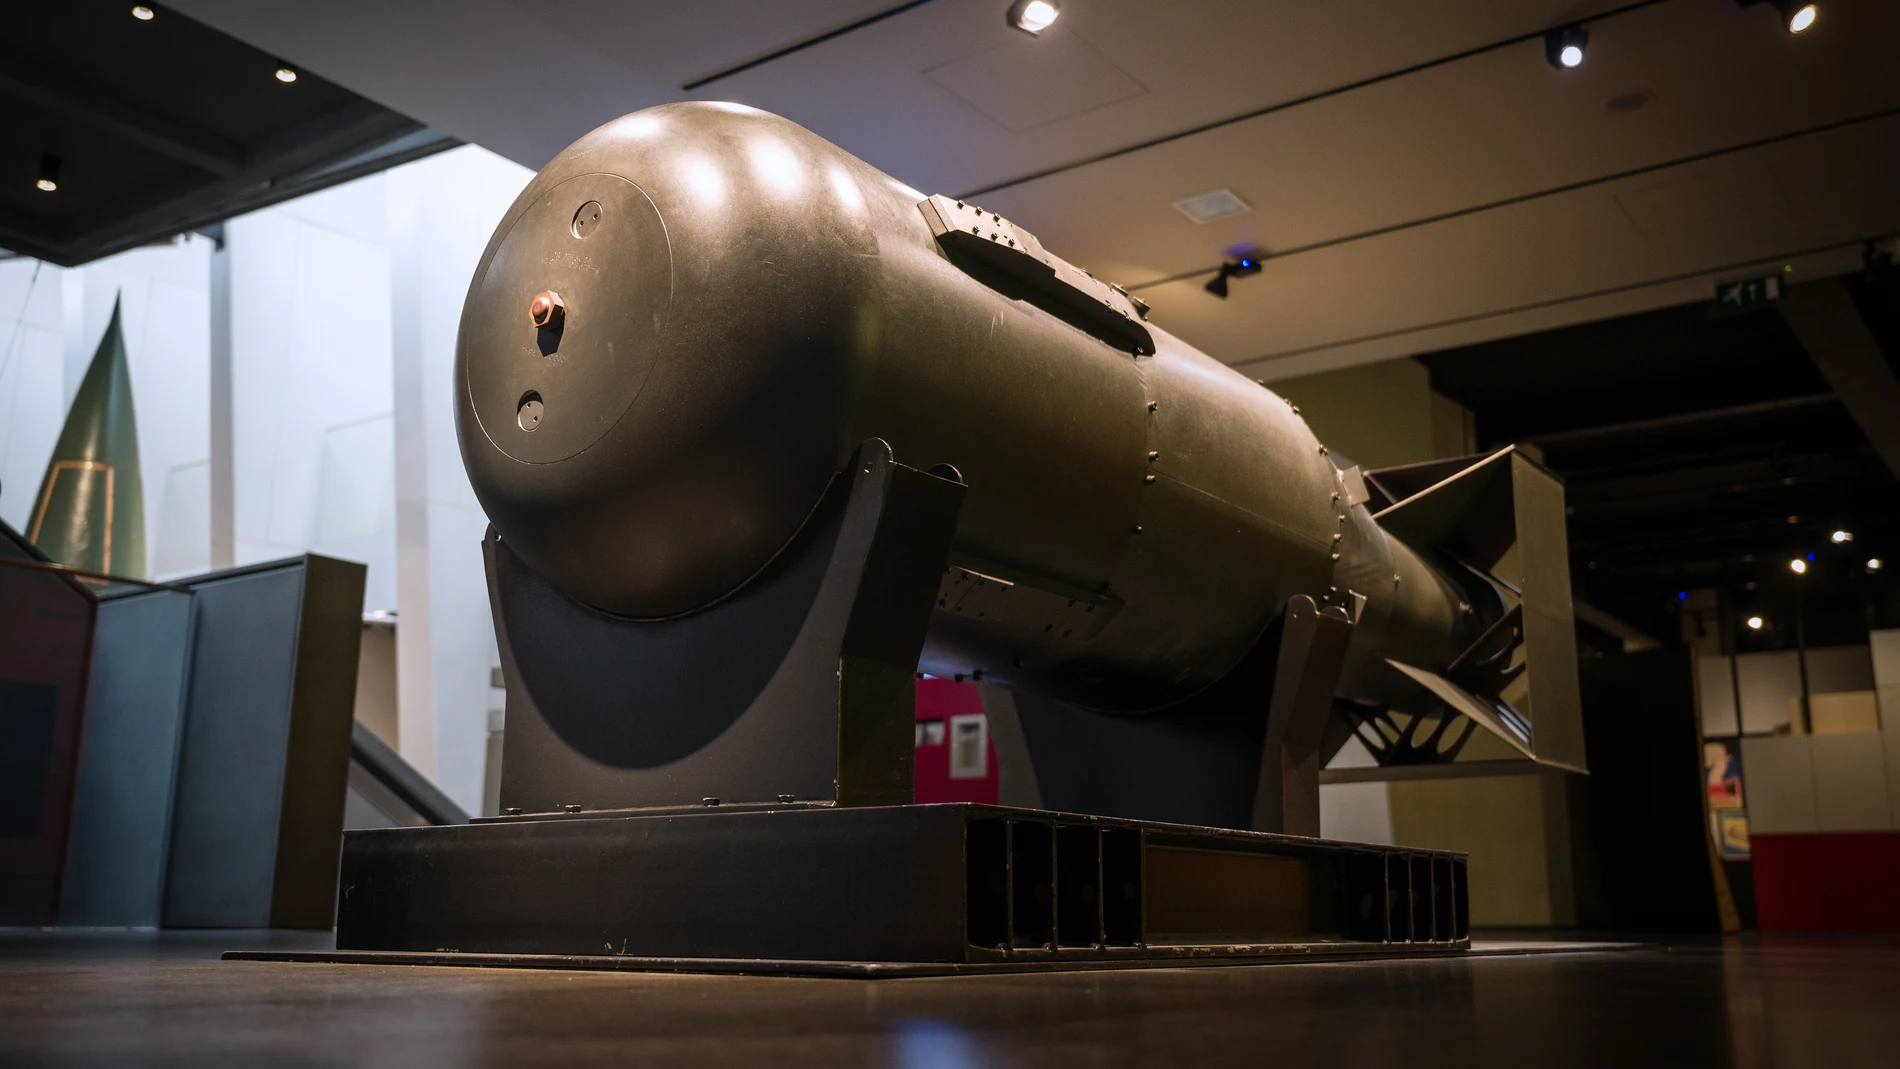 Efemérides hoy 6 de agosto: Una de las cinco carcasas originales hechas para la bomba atómica &quot;Little Boy&quot; se ve en exhibición, luego de la primera proyección de una instalación de video encargada &quot;I Saw The World End&quot;, en el Imperial War Museum el 6 de agosto de 2020 en Londres, Inglaterra.